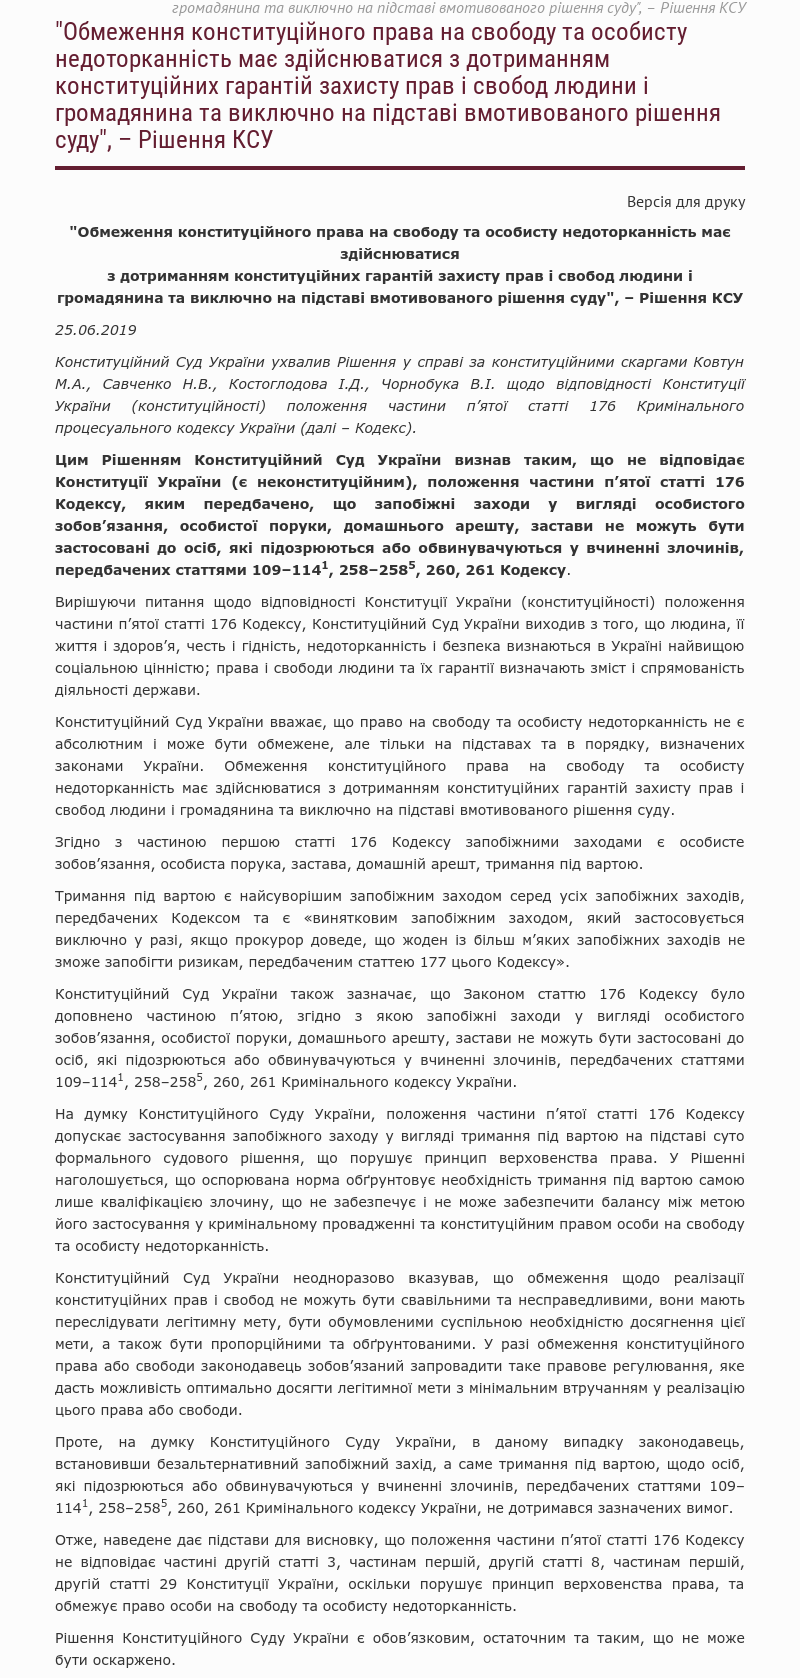 Конституционный суд удовлетворил жалобу Надежды Савченко